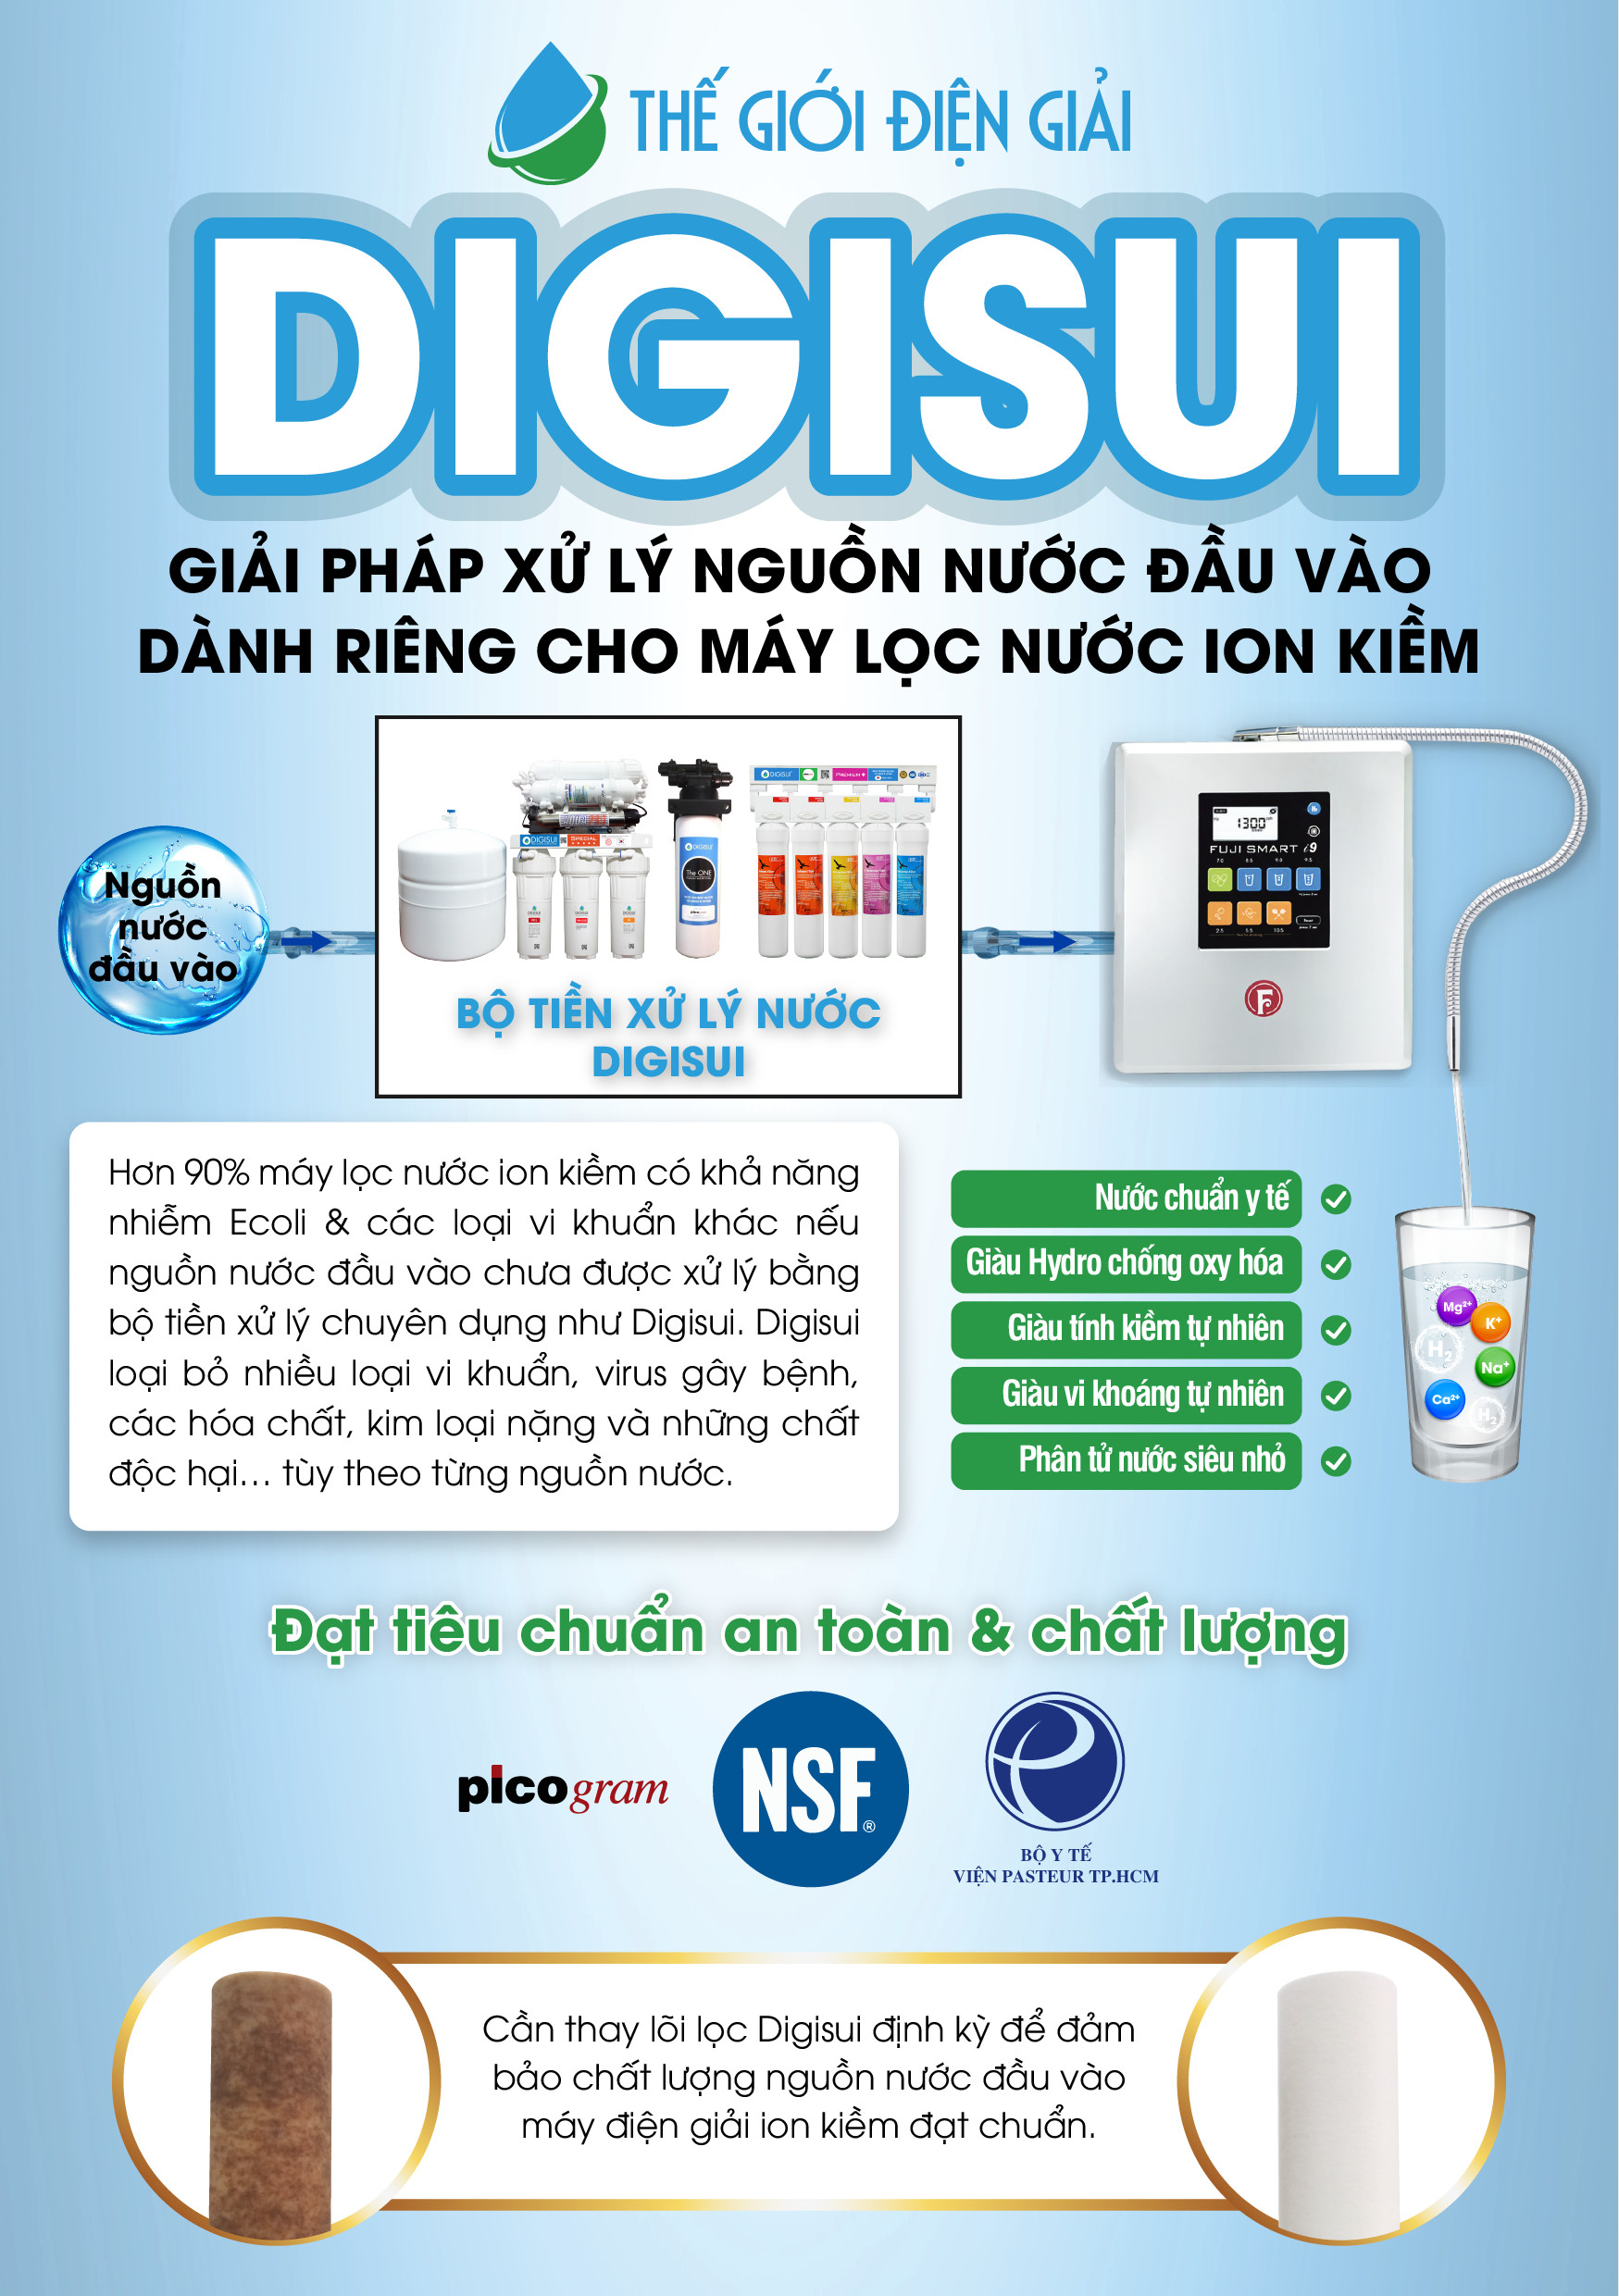 Giải pháp Digisui để chuẩn hóa nguồn nước tại Việt Nam